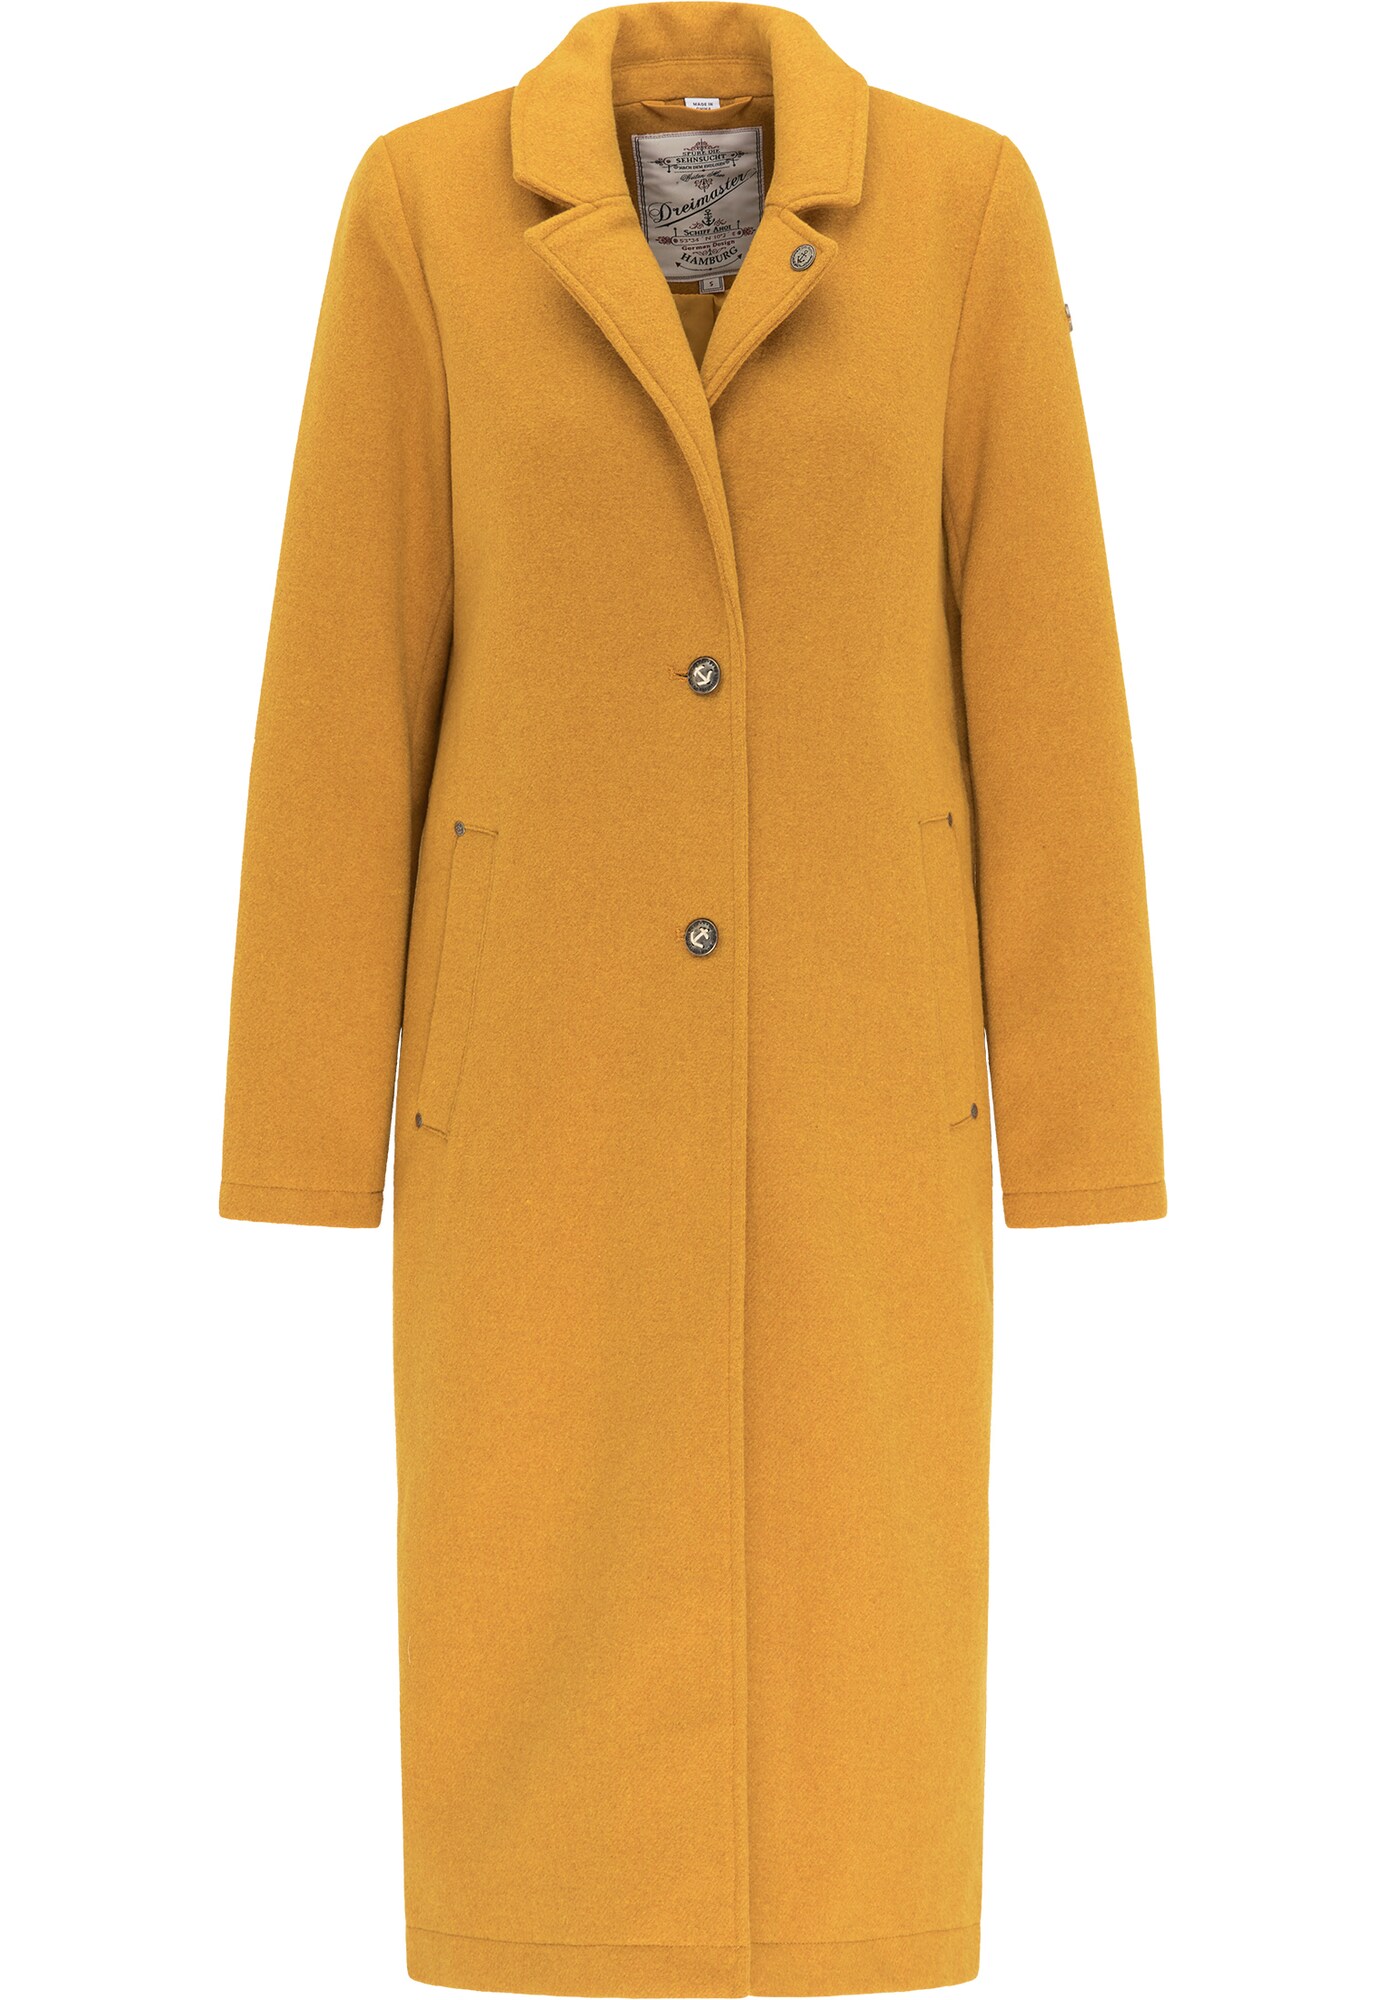 DreiMaster Vintage Rudeninis-žieminis paltas  medaus spalva